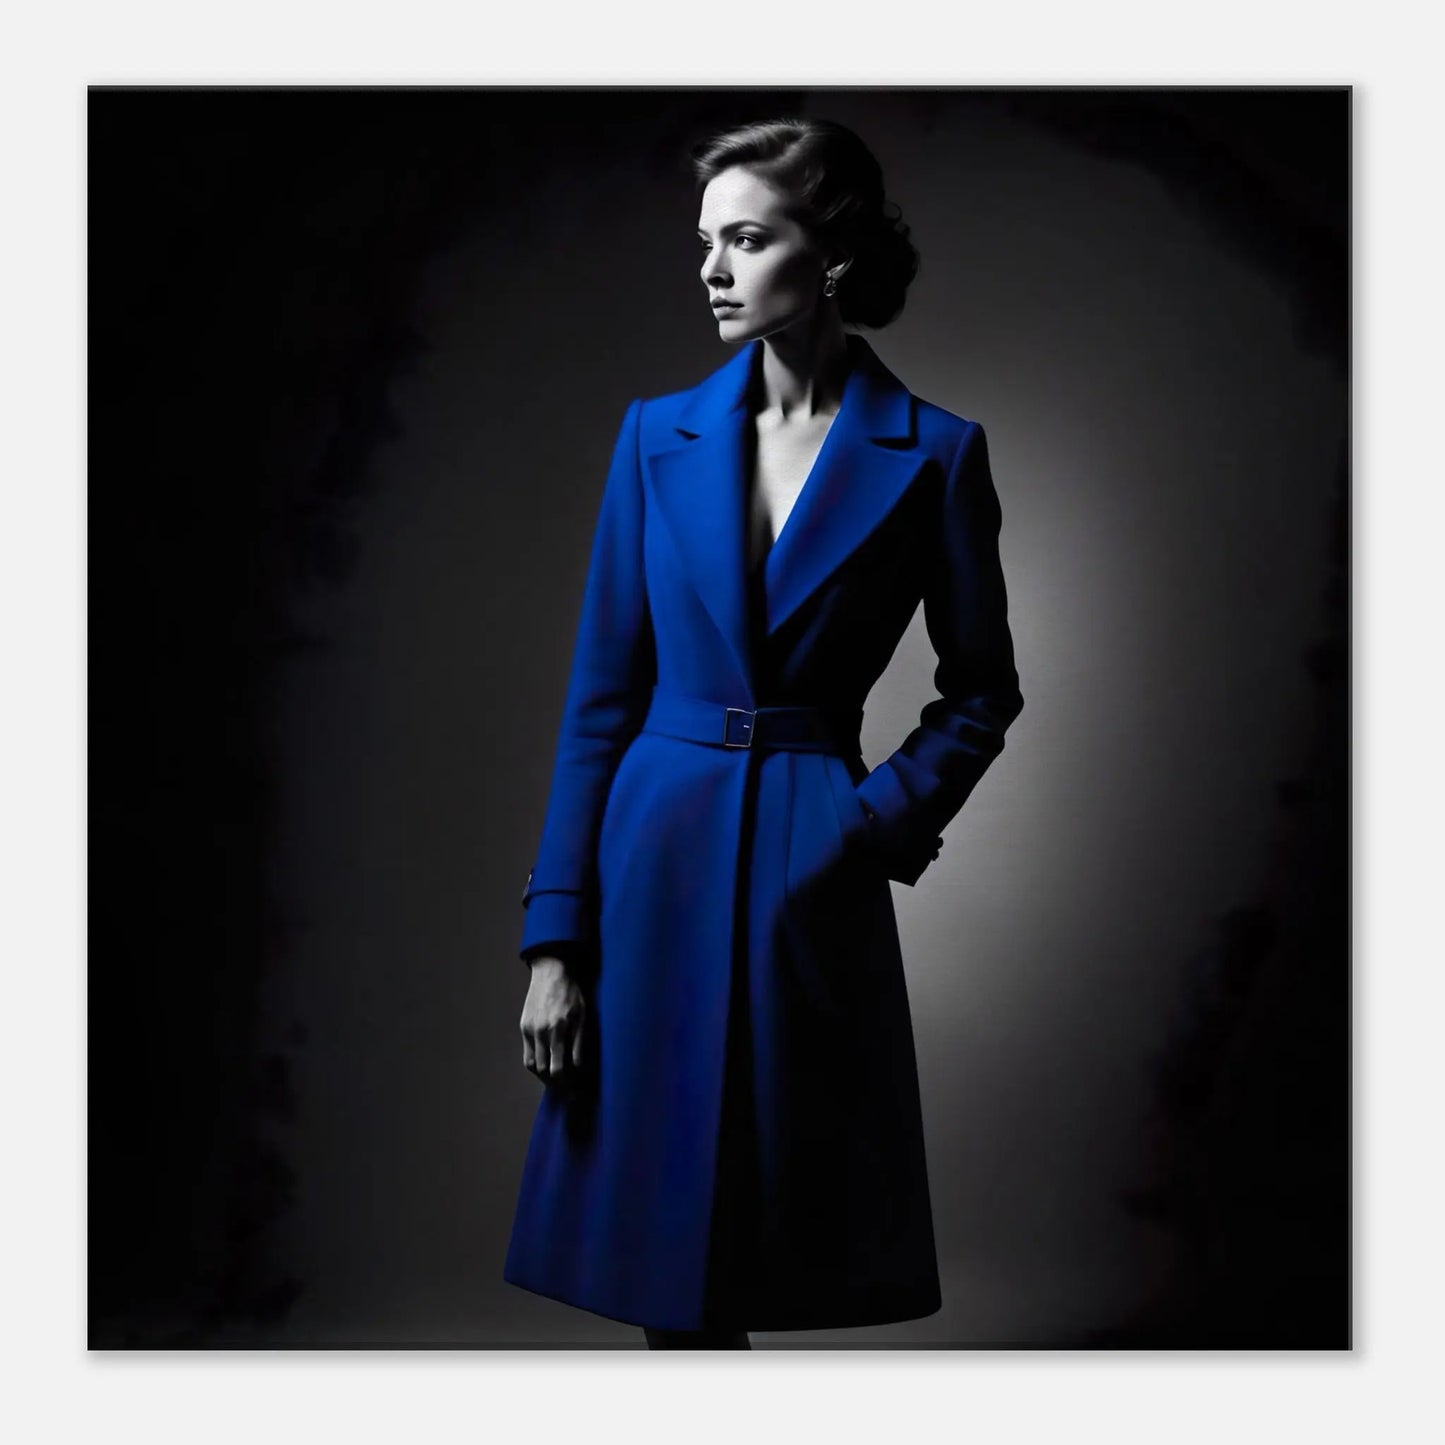 Leinwandbild - Frau im blauen Mantel - Schwarz-Weiß Stil, KI-Kunst - RolConArt, Schwarz-Weiß mit Akzentfarben, 50x50-cm-20x20